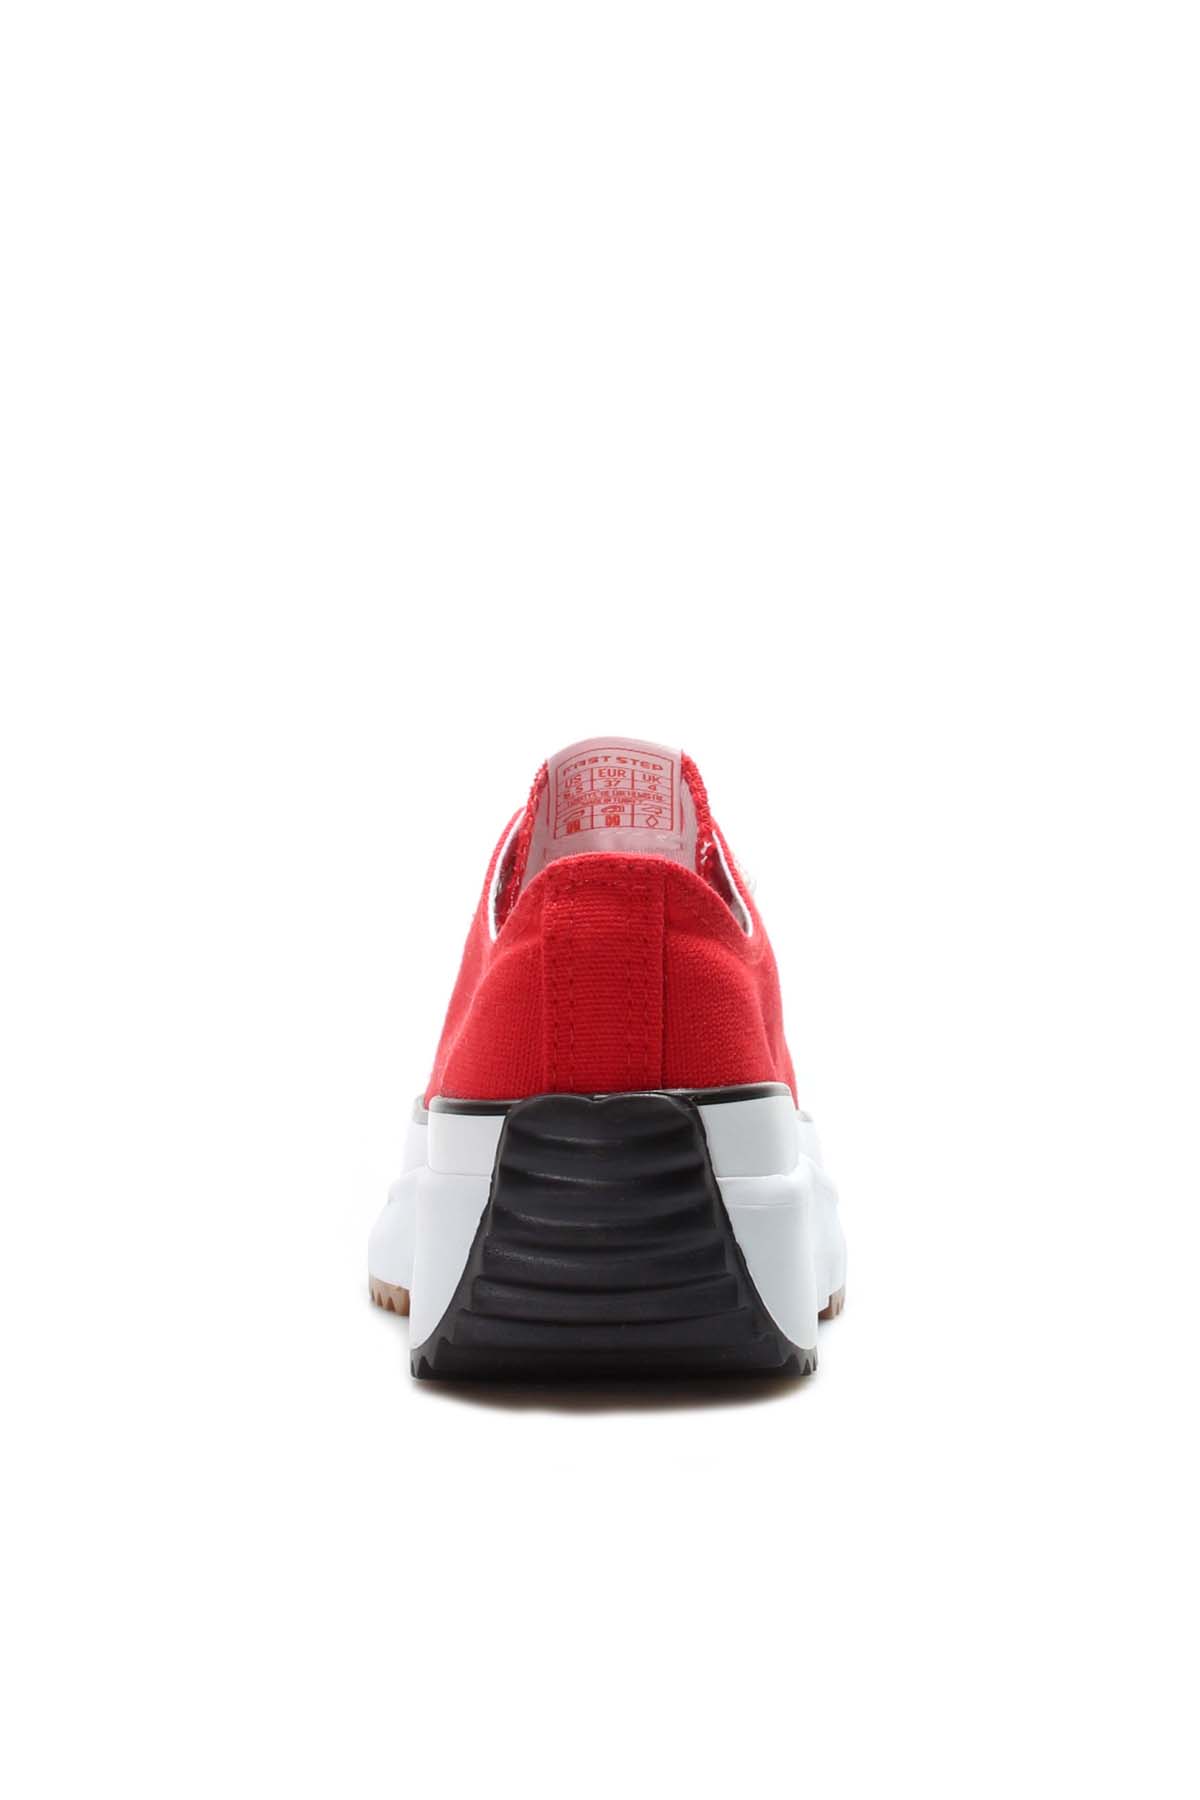 Fast Step Kadın Spor Ayakkabı Kırmızı 620ZA949